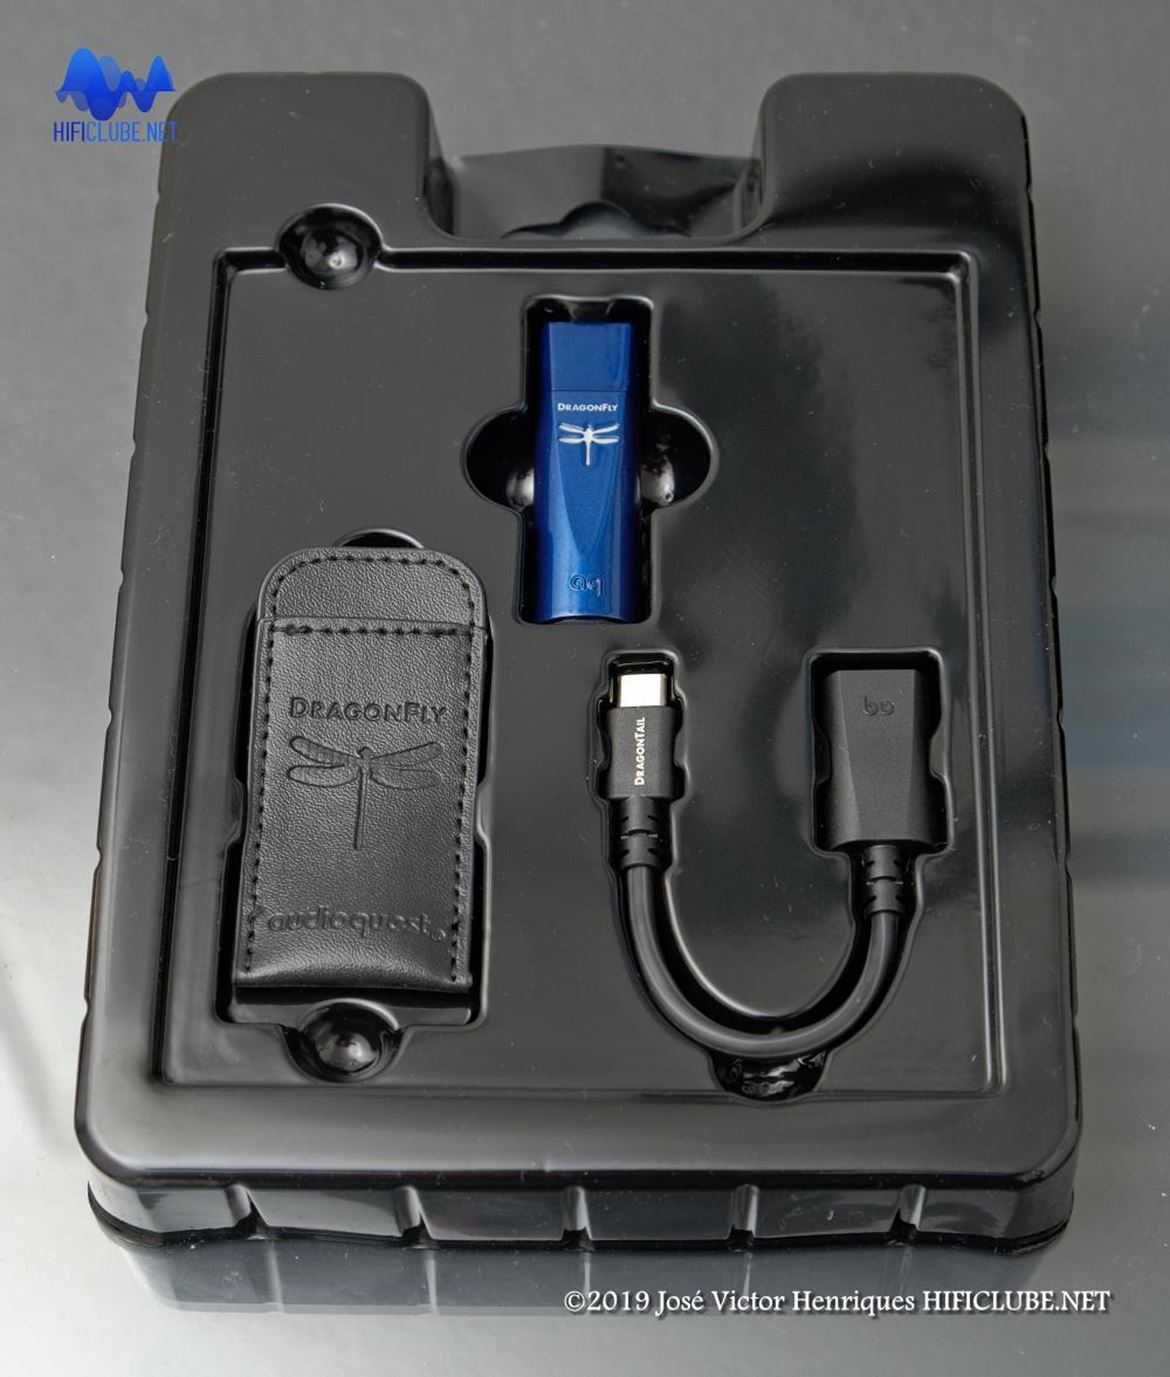 Conteúdo da embalagem: Cobalt DAC, bolsa e adaptador USB C